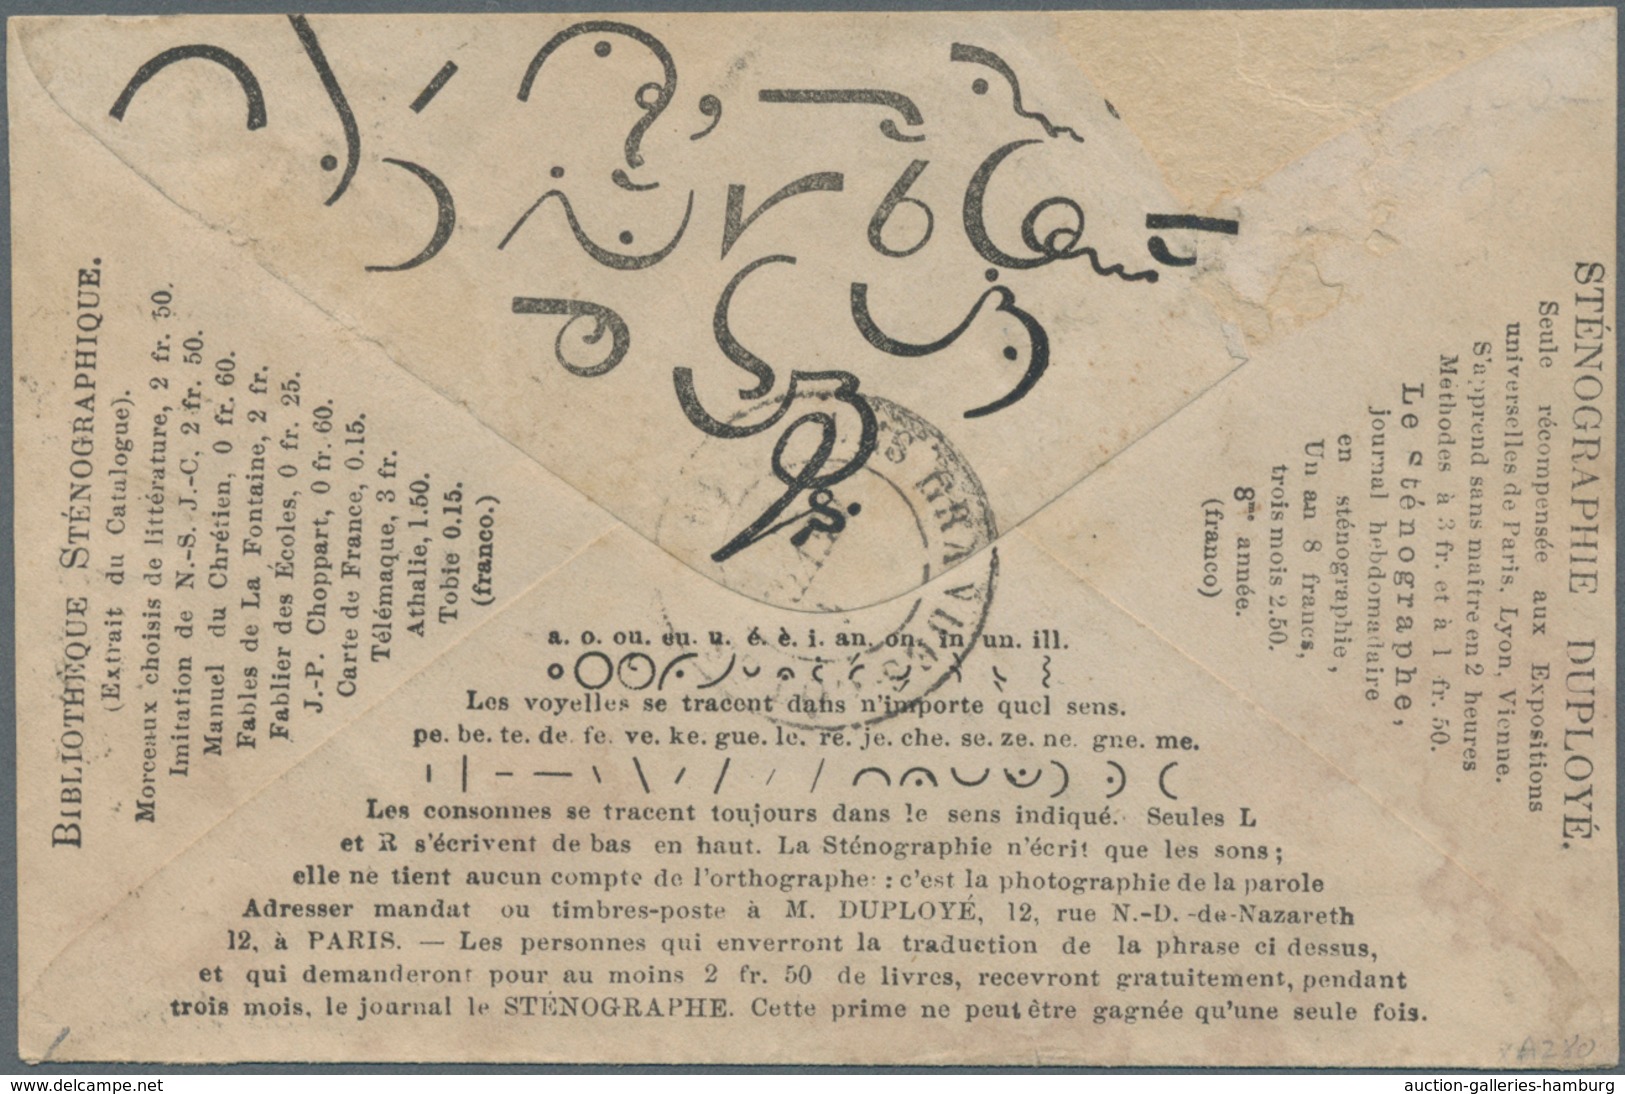 Österreich: 1867, 10 Kr Franz Joseph Tiefblau, Feiner Druck, Farbfrisch Und Tadellos Vollzähnig Auf - Unused Stamps